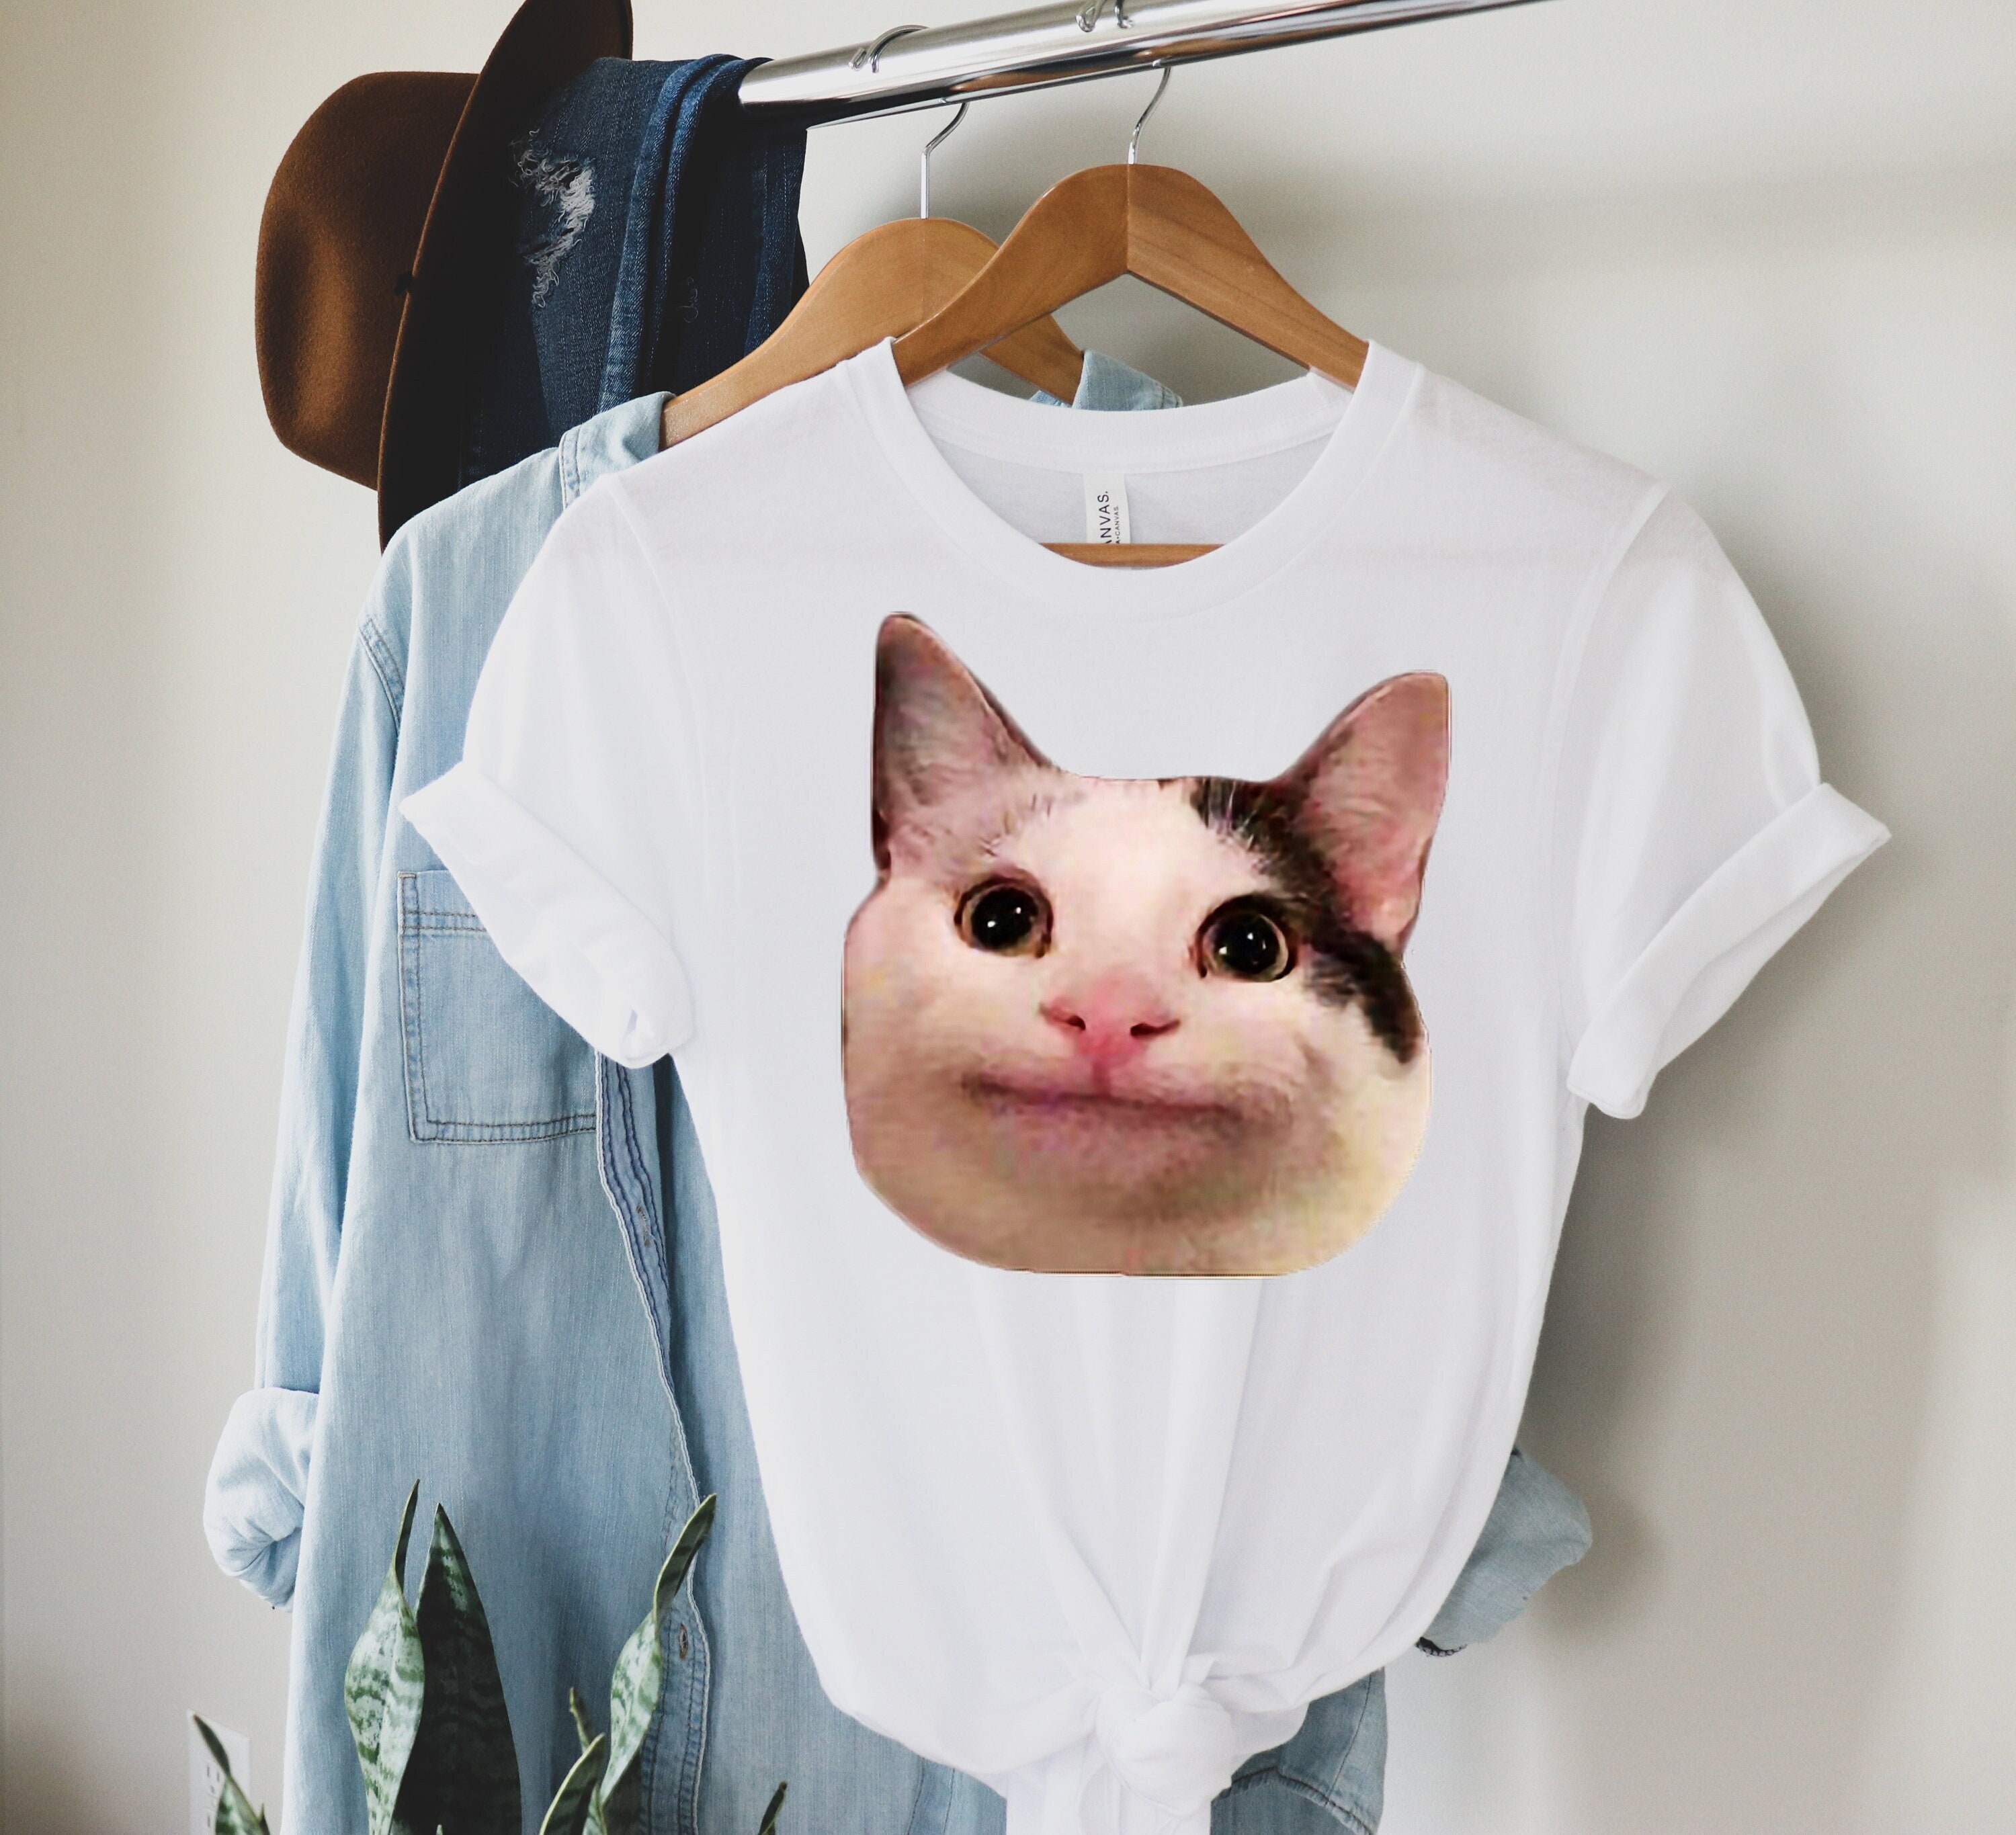 Beluga The Meme Cat Rip Ollie Unisex T-Shirt - Teeruto